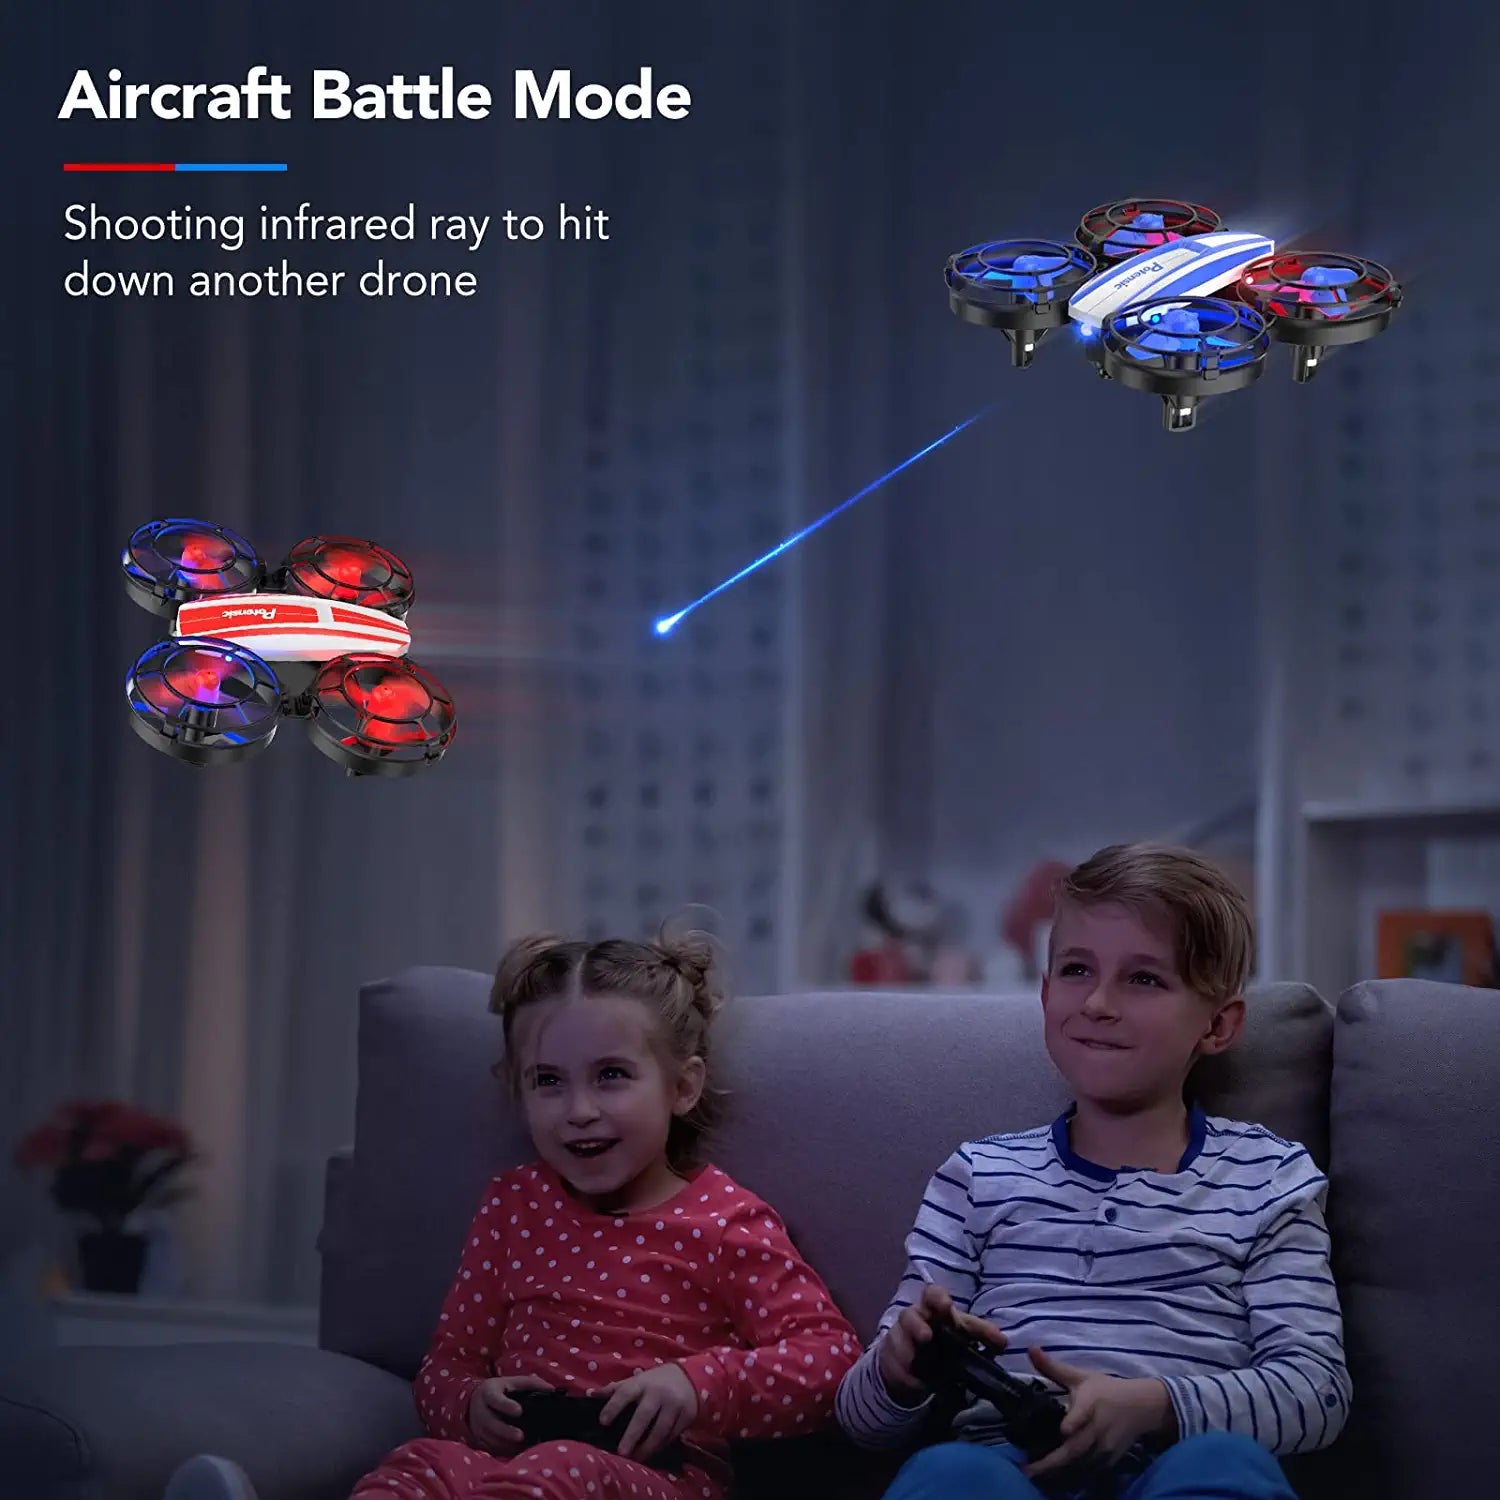 Mini dron A20 mejorado de Potensic: fácil de volar incluso para niños –  RCDrone